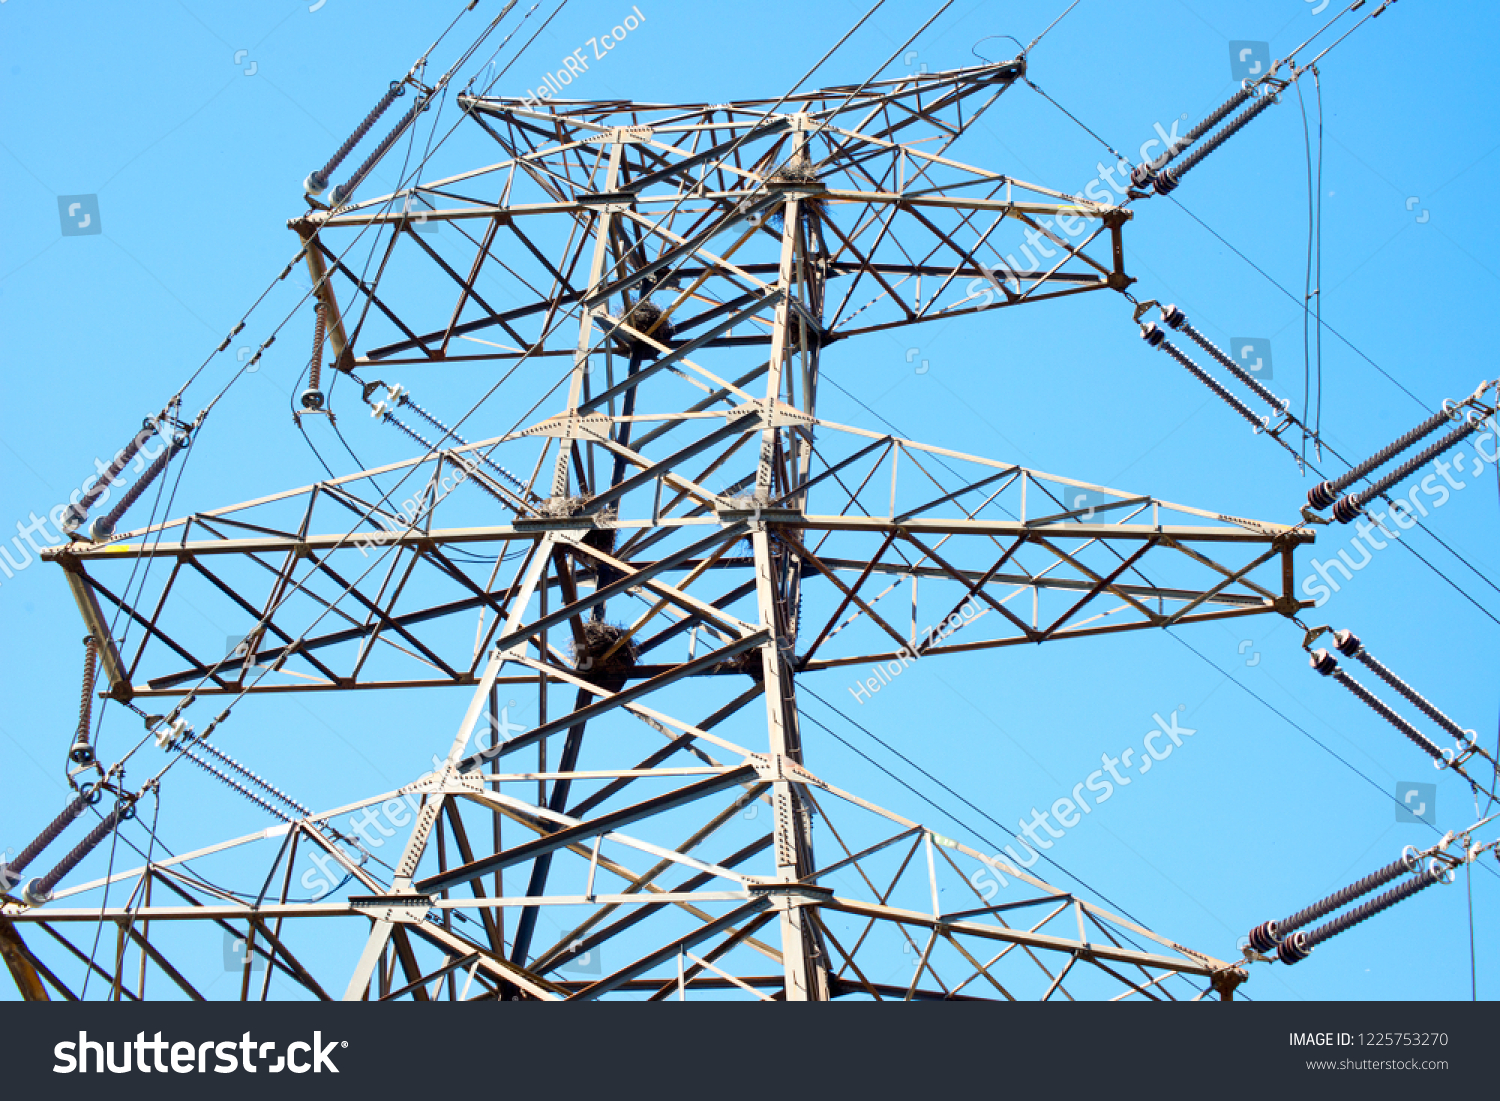 High voltage transmission line and transmission tower under blue sky #1225753270